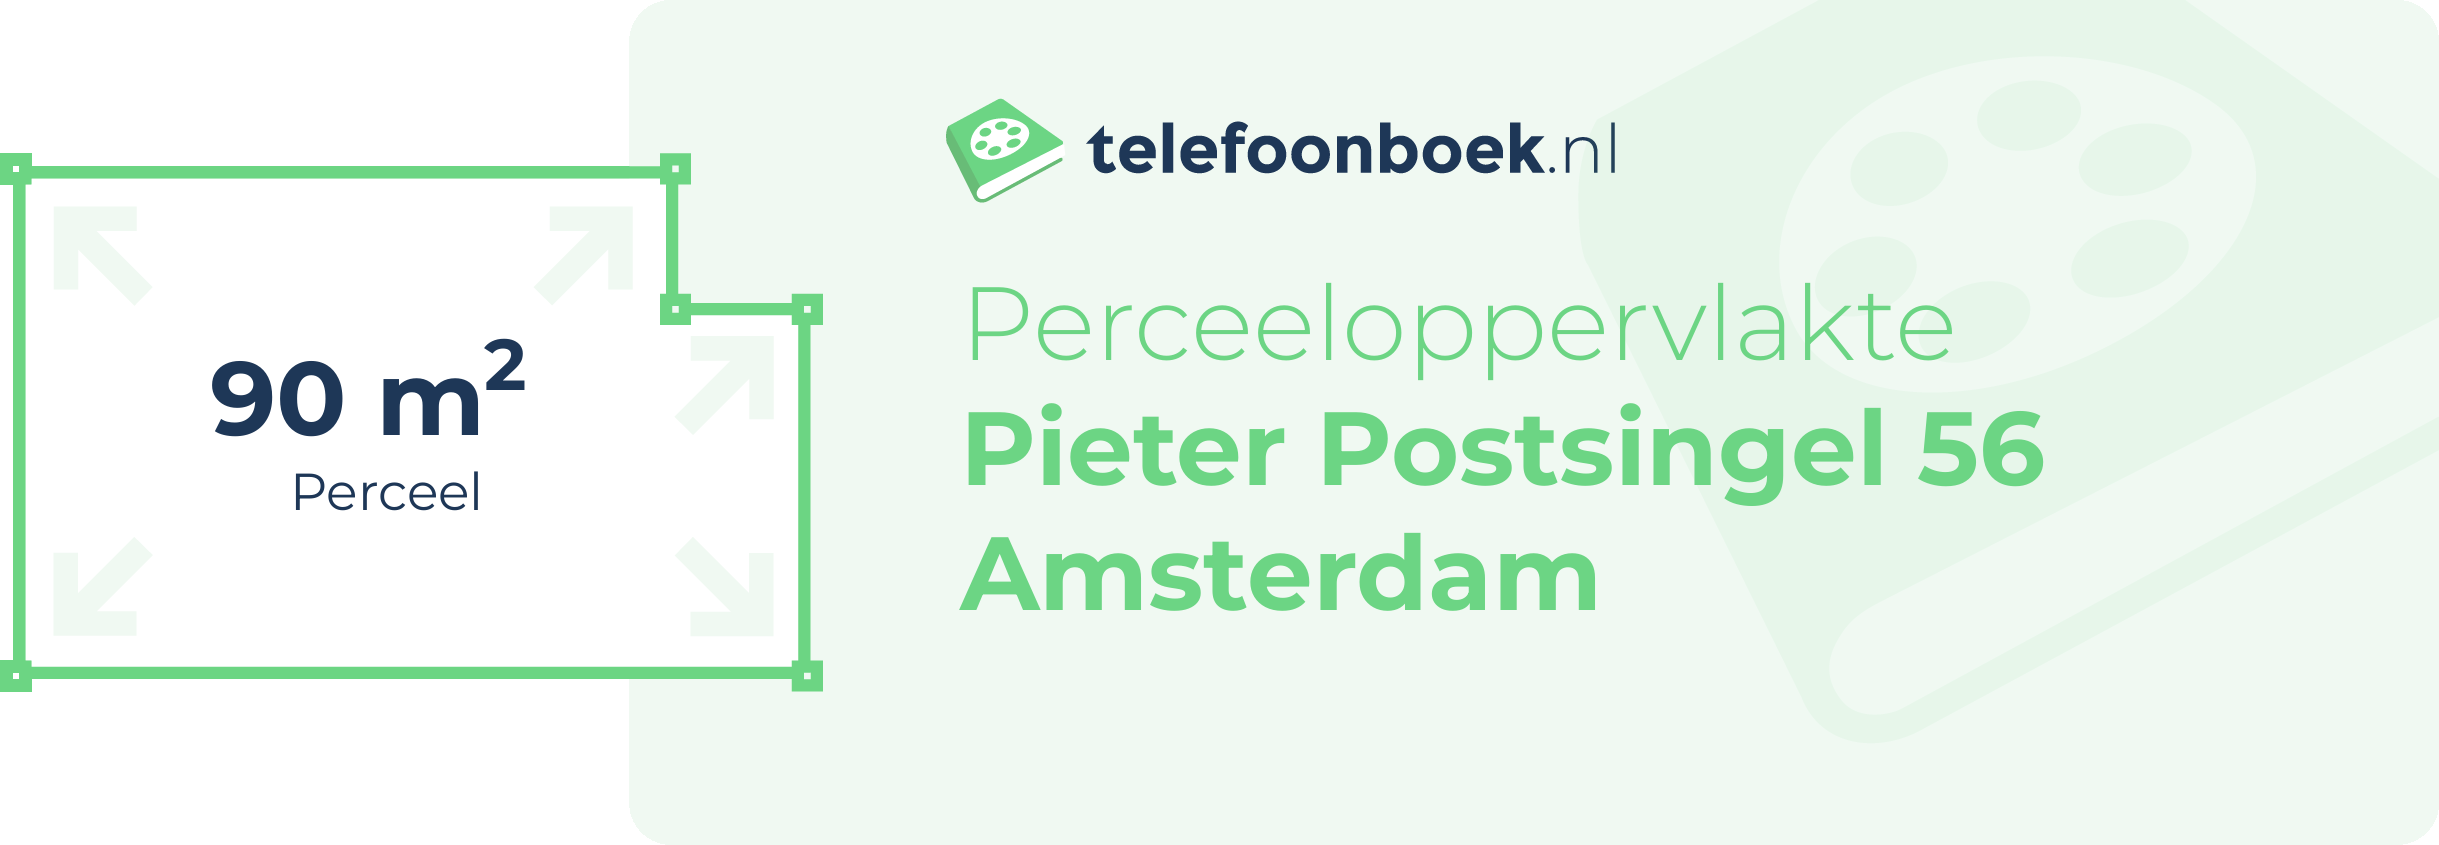 Perceeloppervlakte Pieter Postsingel 56 Amsterdam